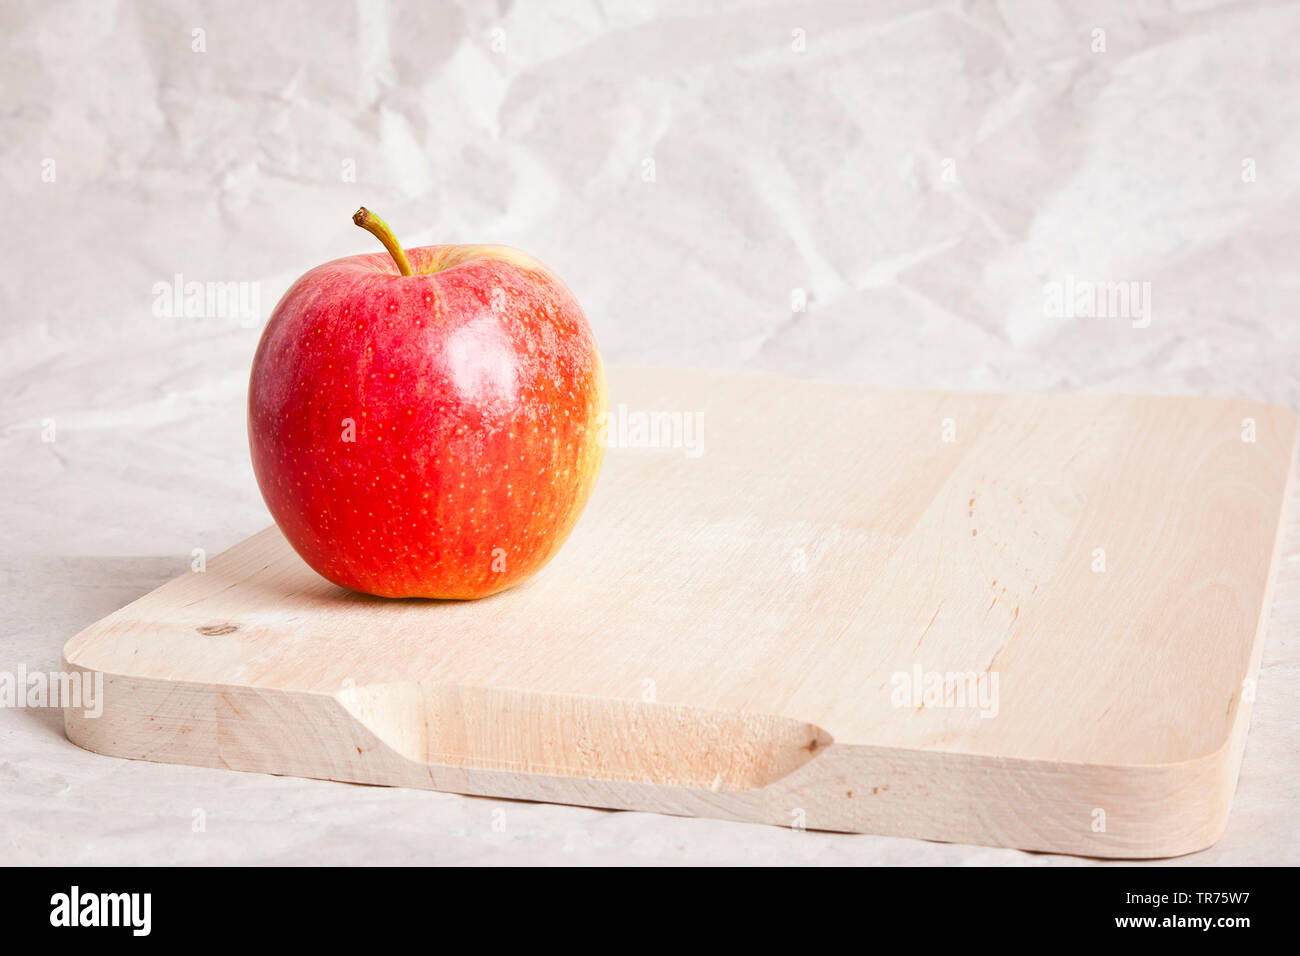 Apple (Malus domestica), pomme rouge sur une plaque woode Banque D'Images